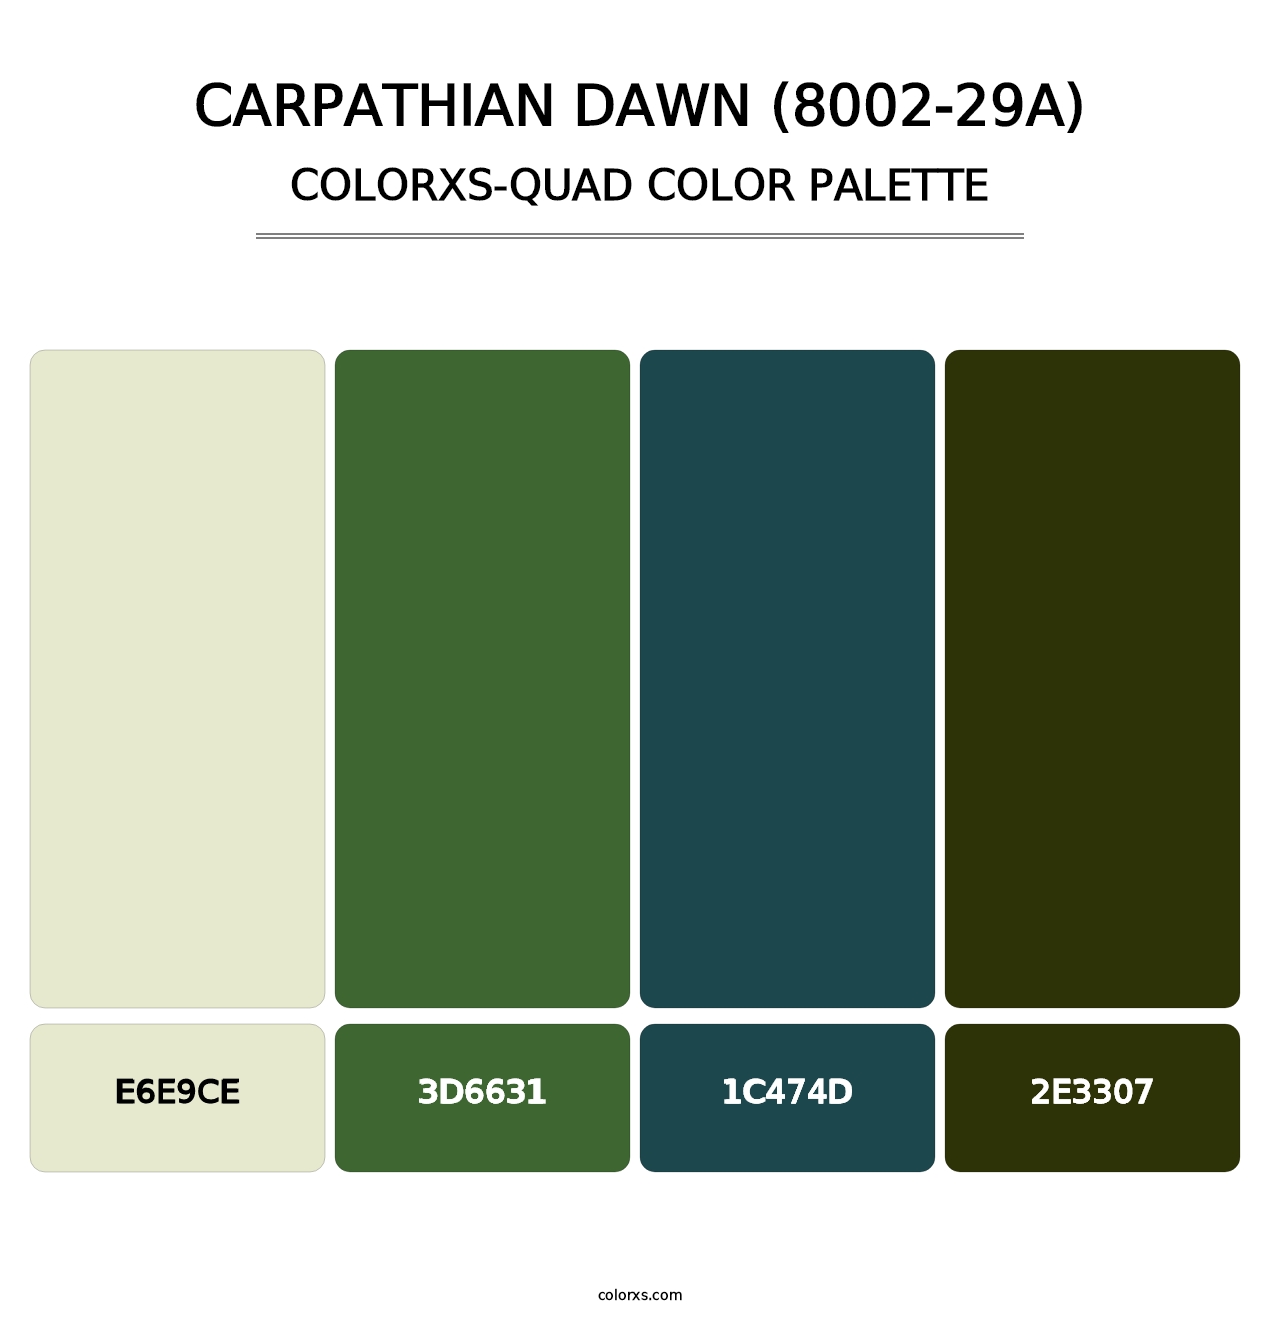 Carpathian Dawn (8002-29A) - Colorxs Quad Palette